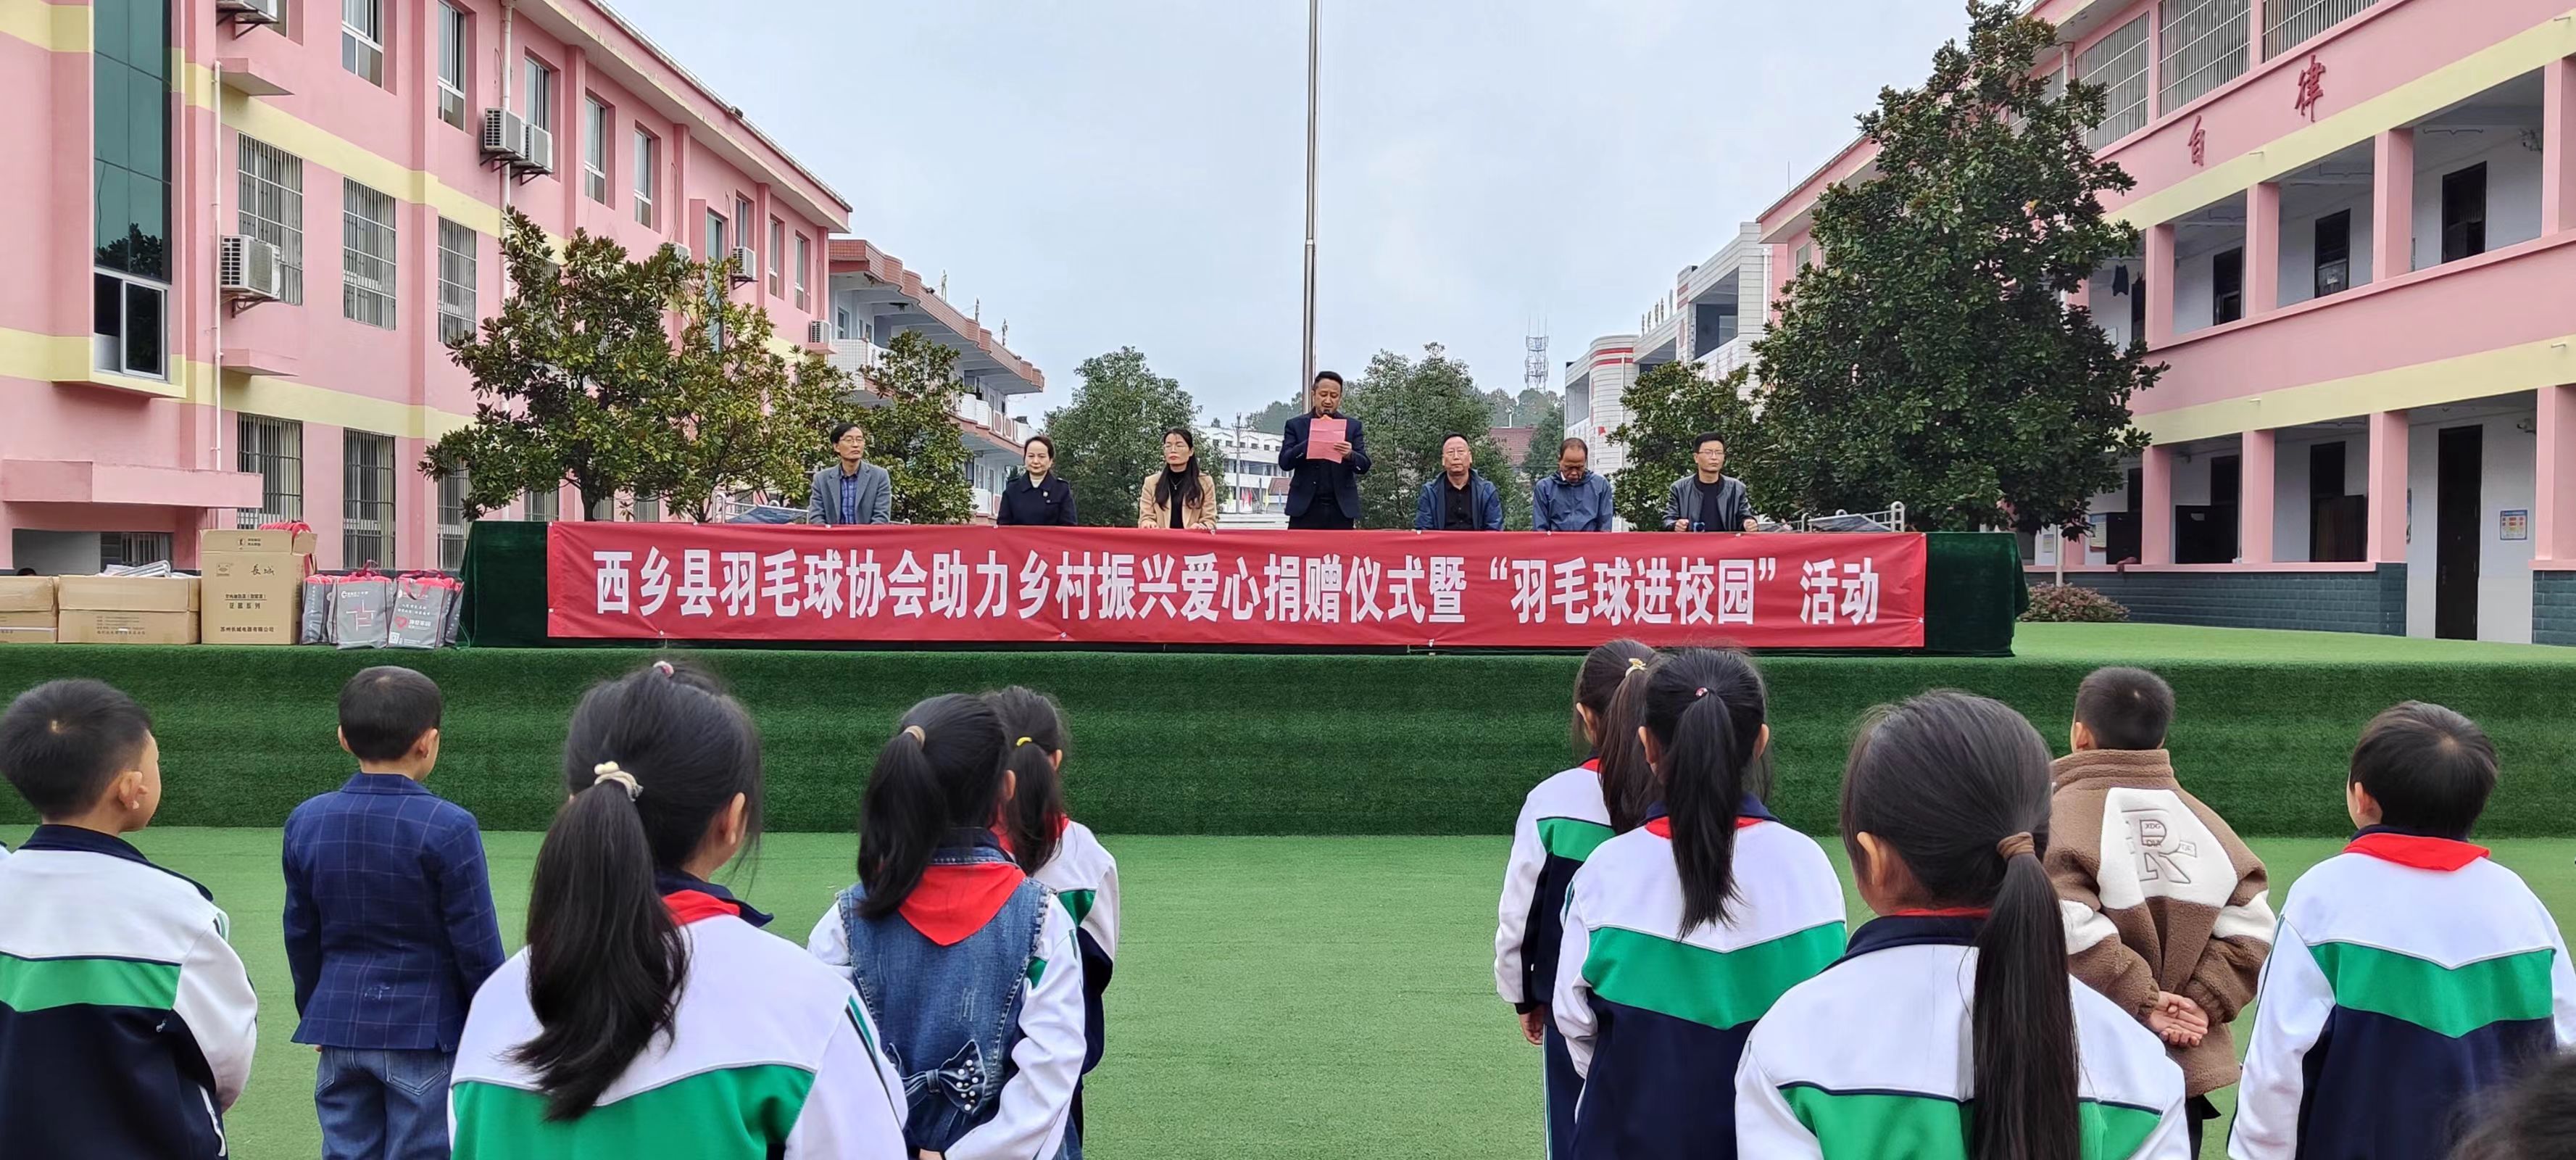 西乡县羽协助力乡村振兴暨羽毛球进校园活动在柳树镇中心学校举行